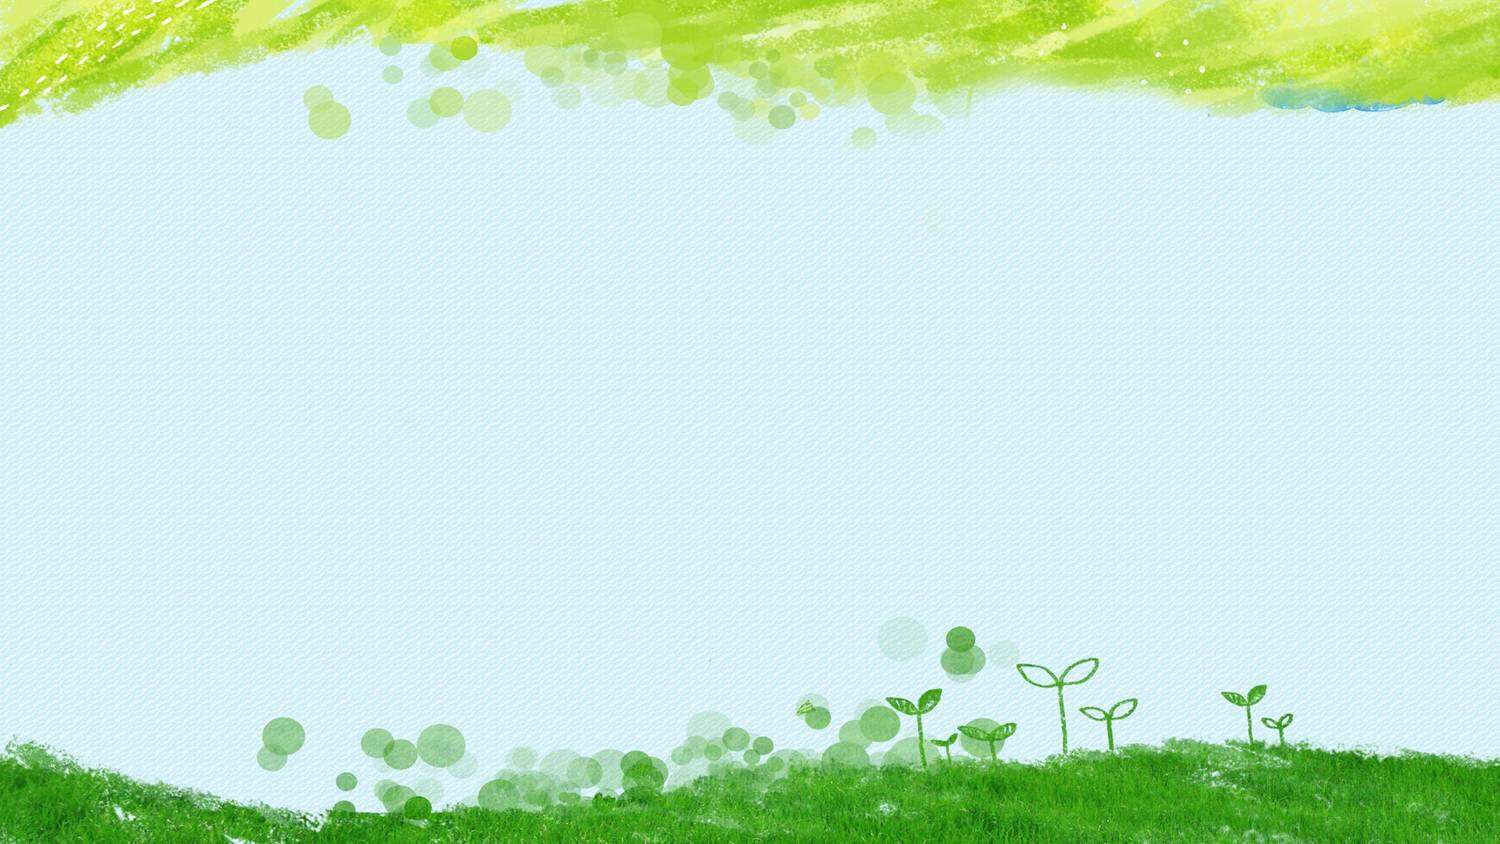 绿色水彩绘制的卡通草地嫩芽PPT背景图片